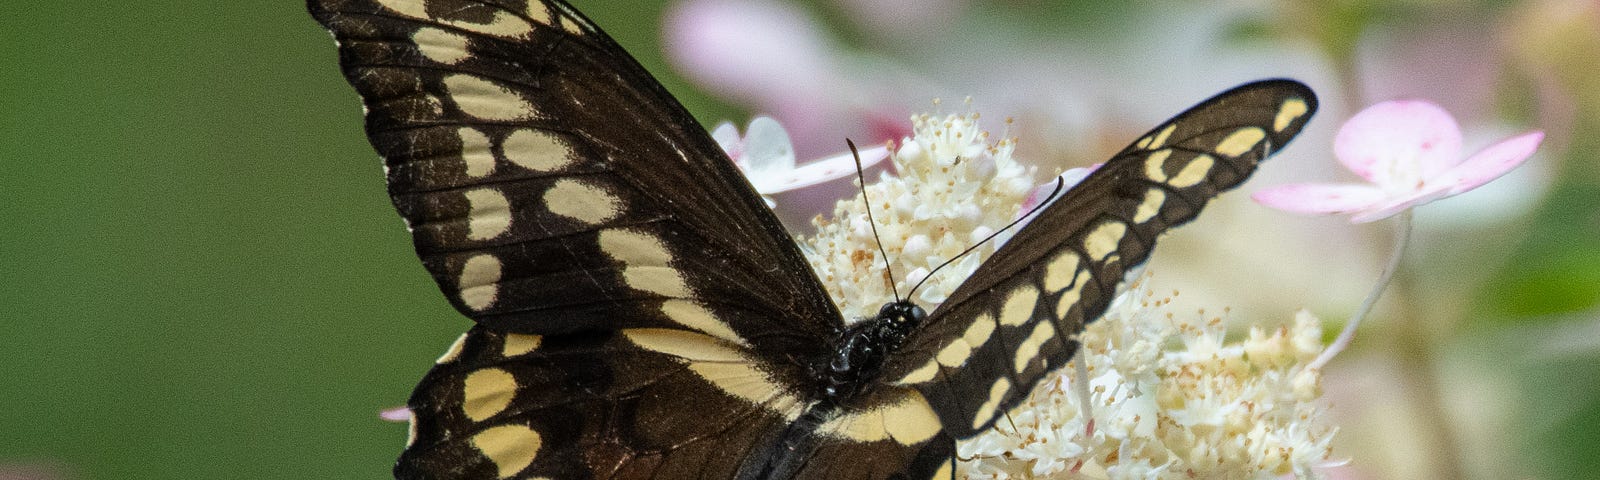 Black Swallowtail butterfly on Quick Fire hydrangea.